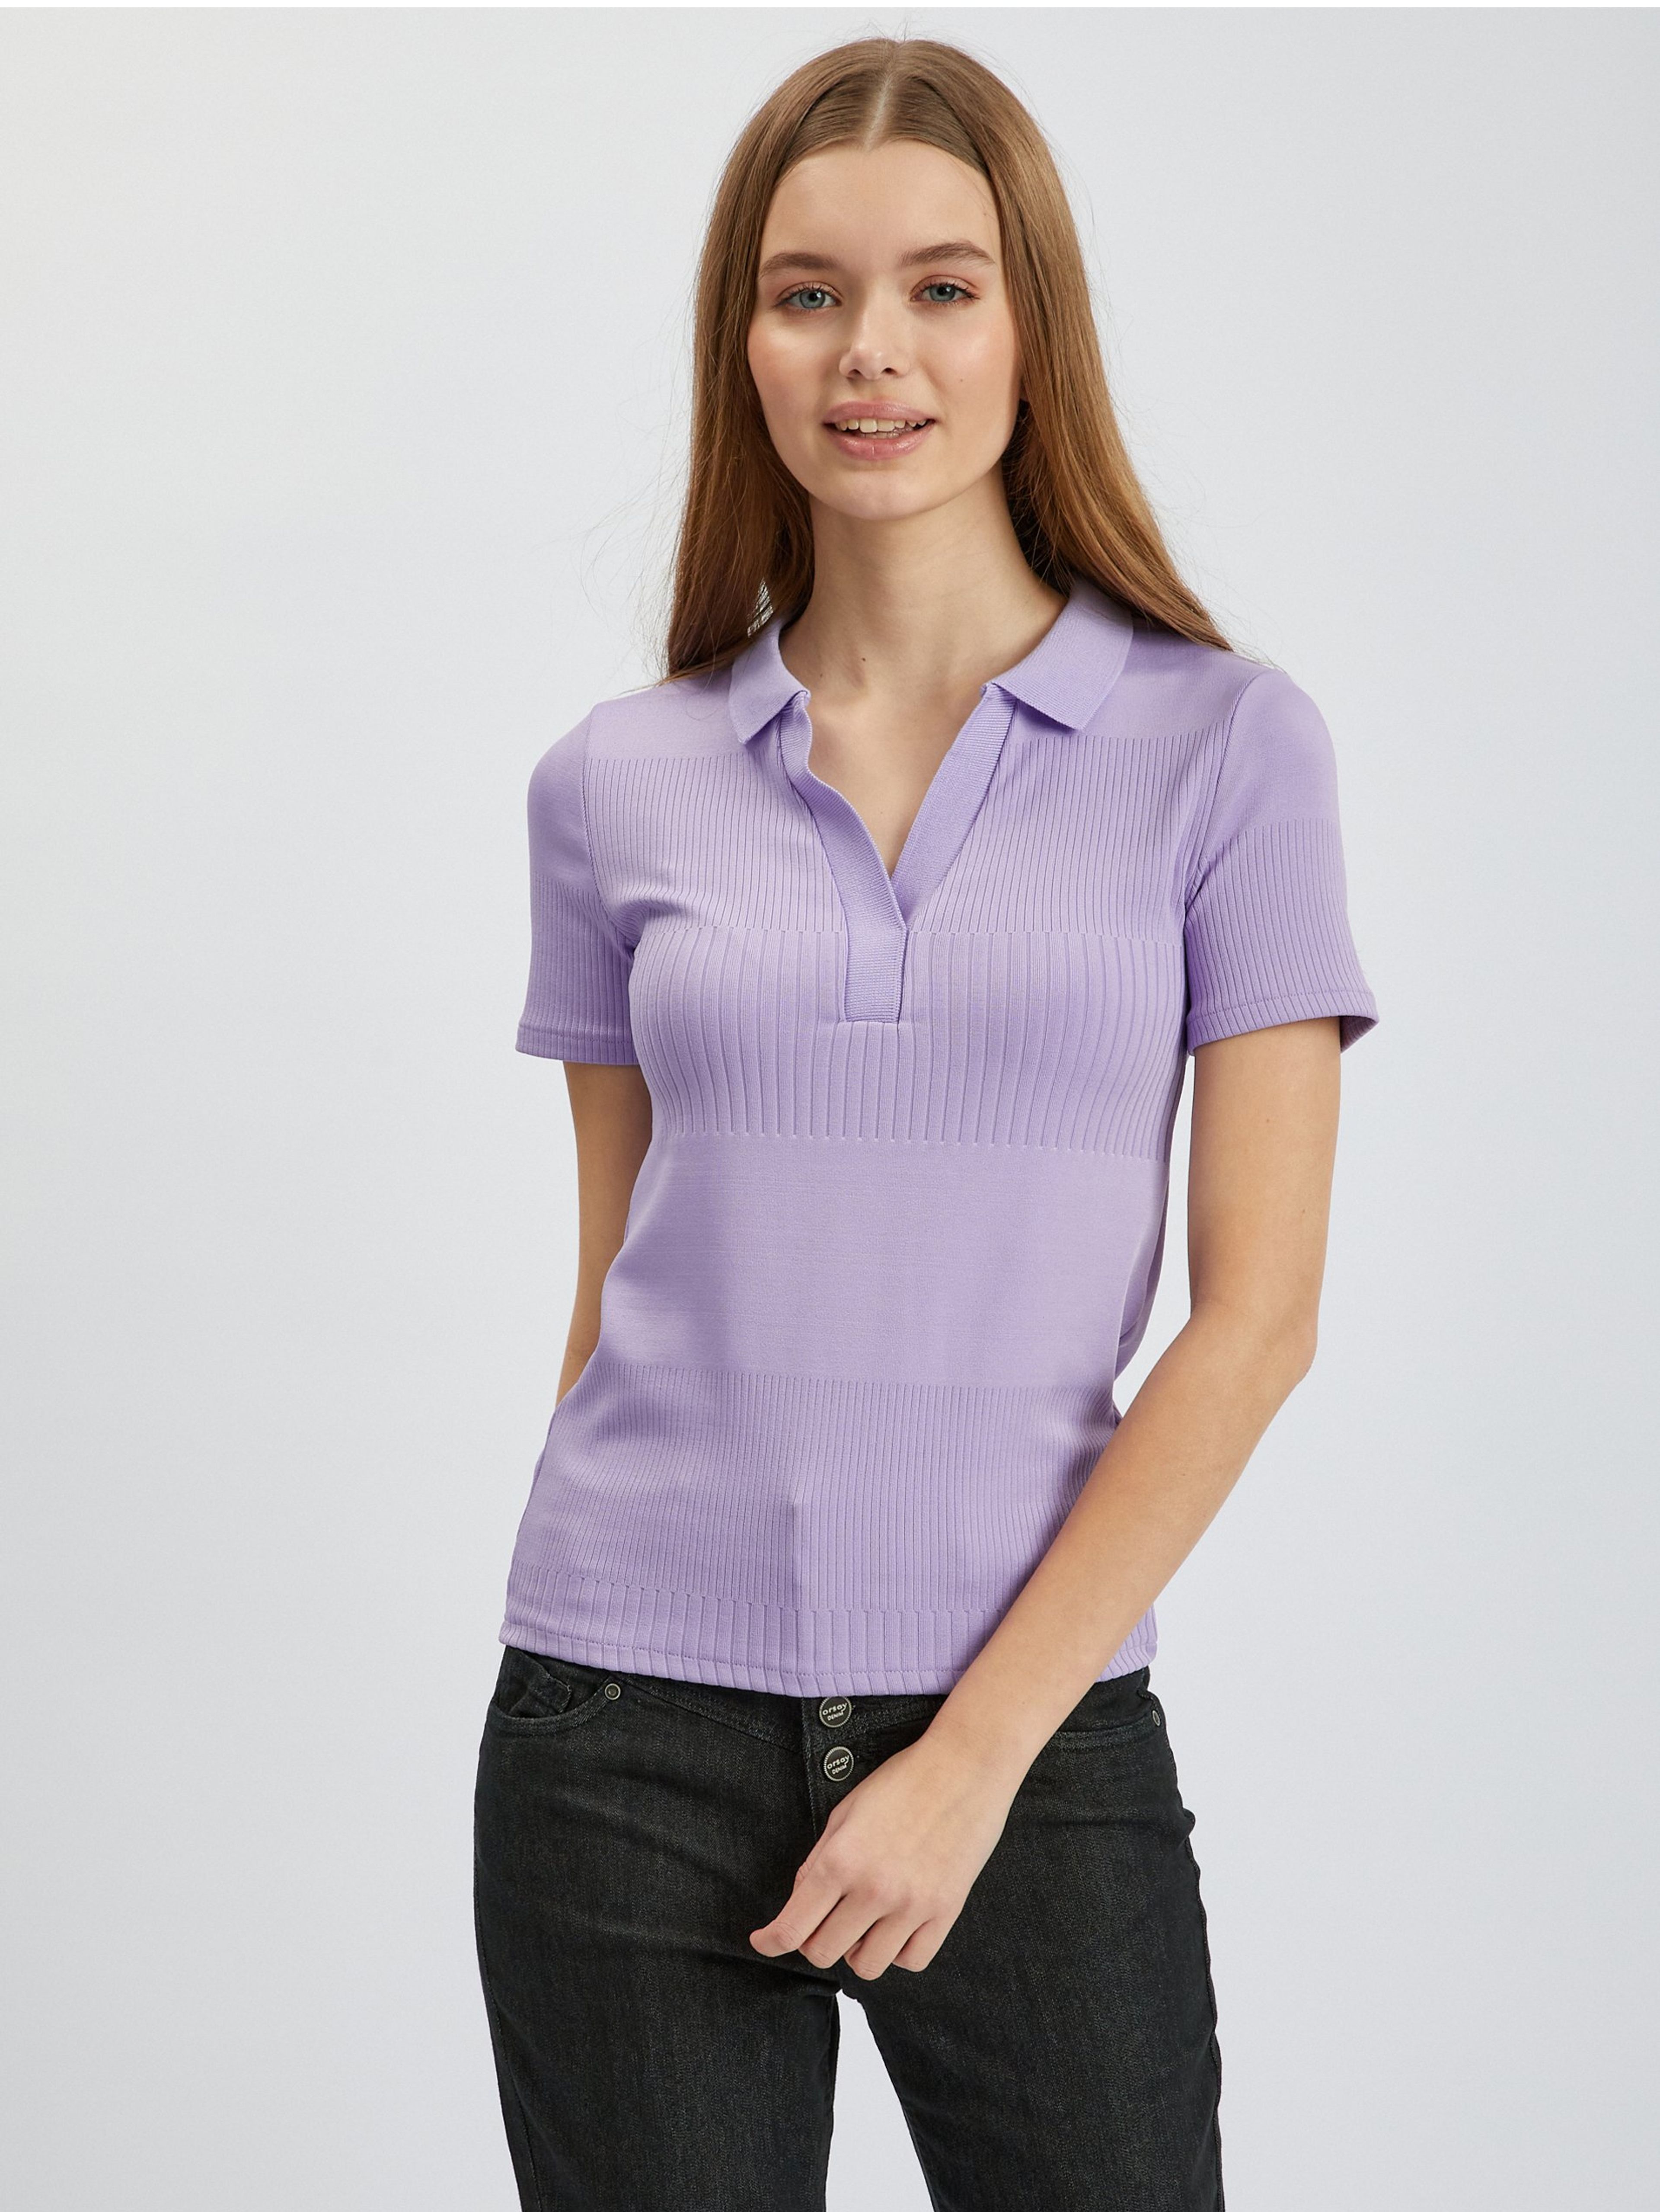 Svetlo fialové dámske polo tričko ORSAY